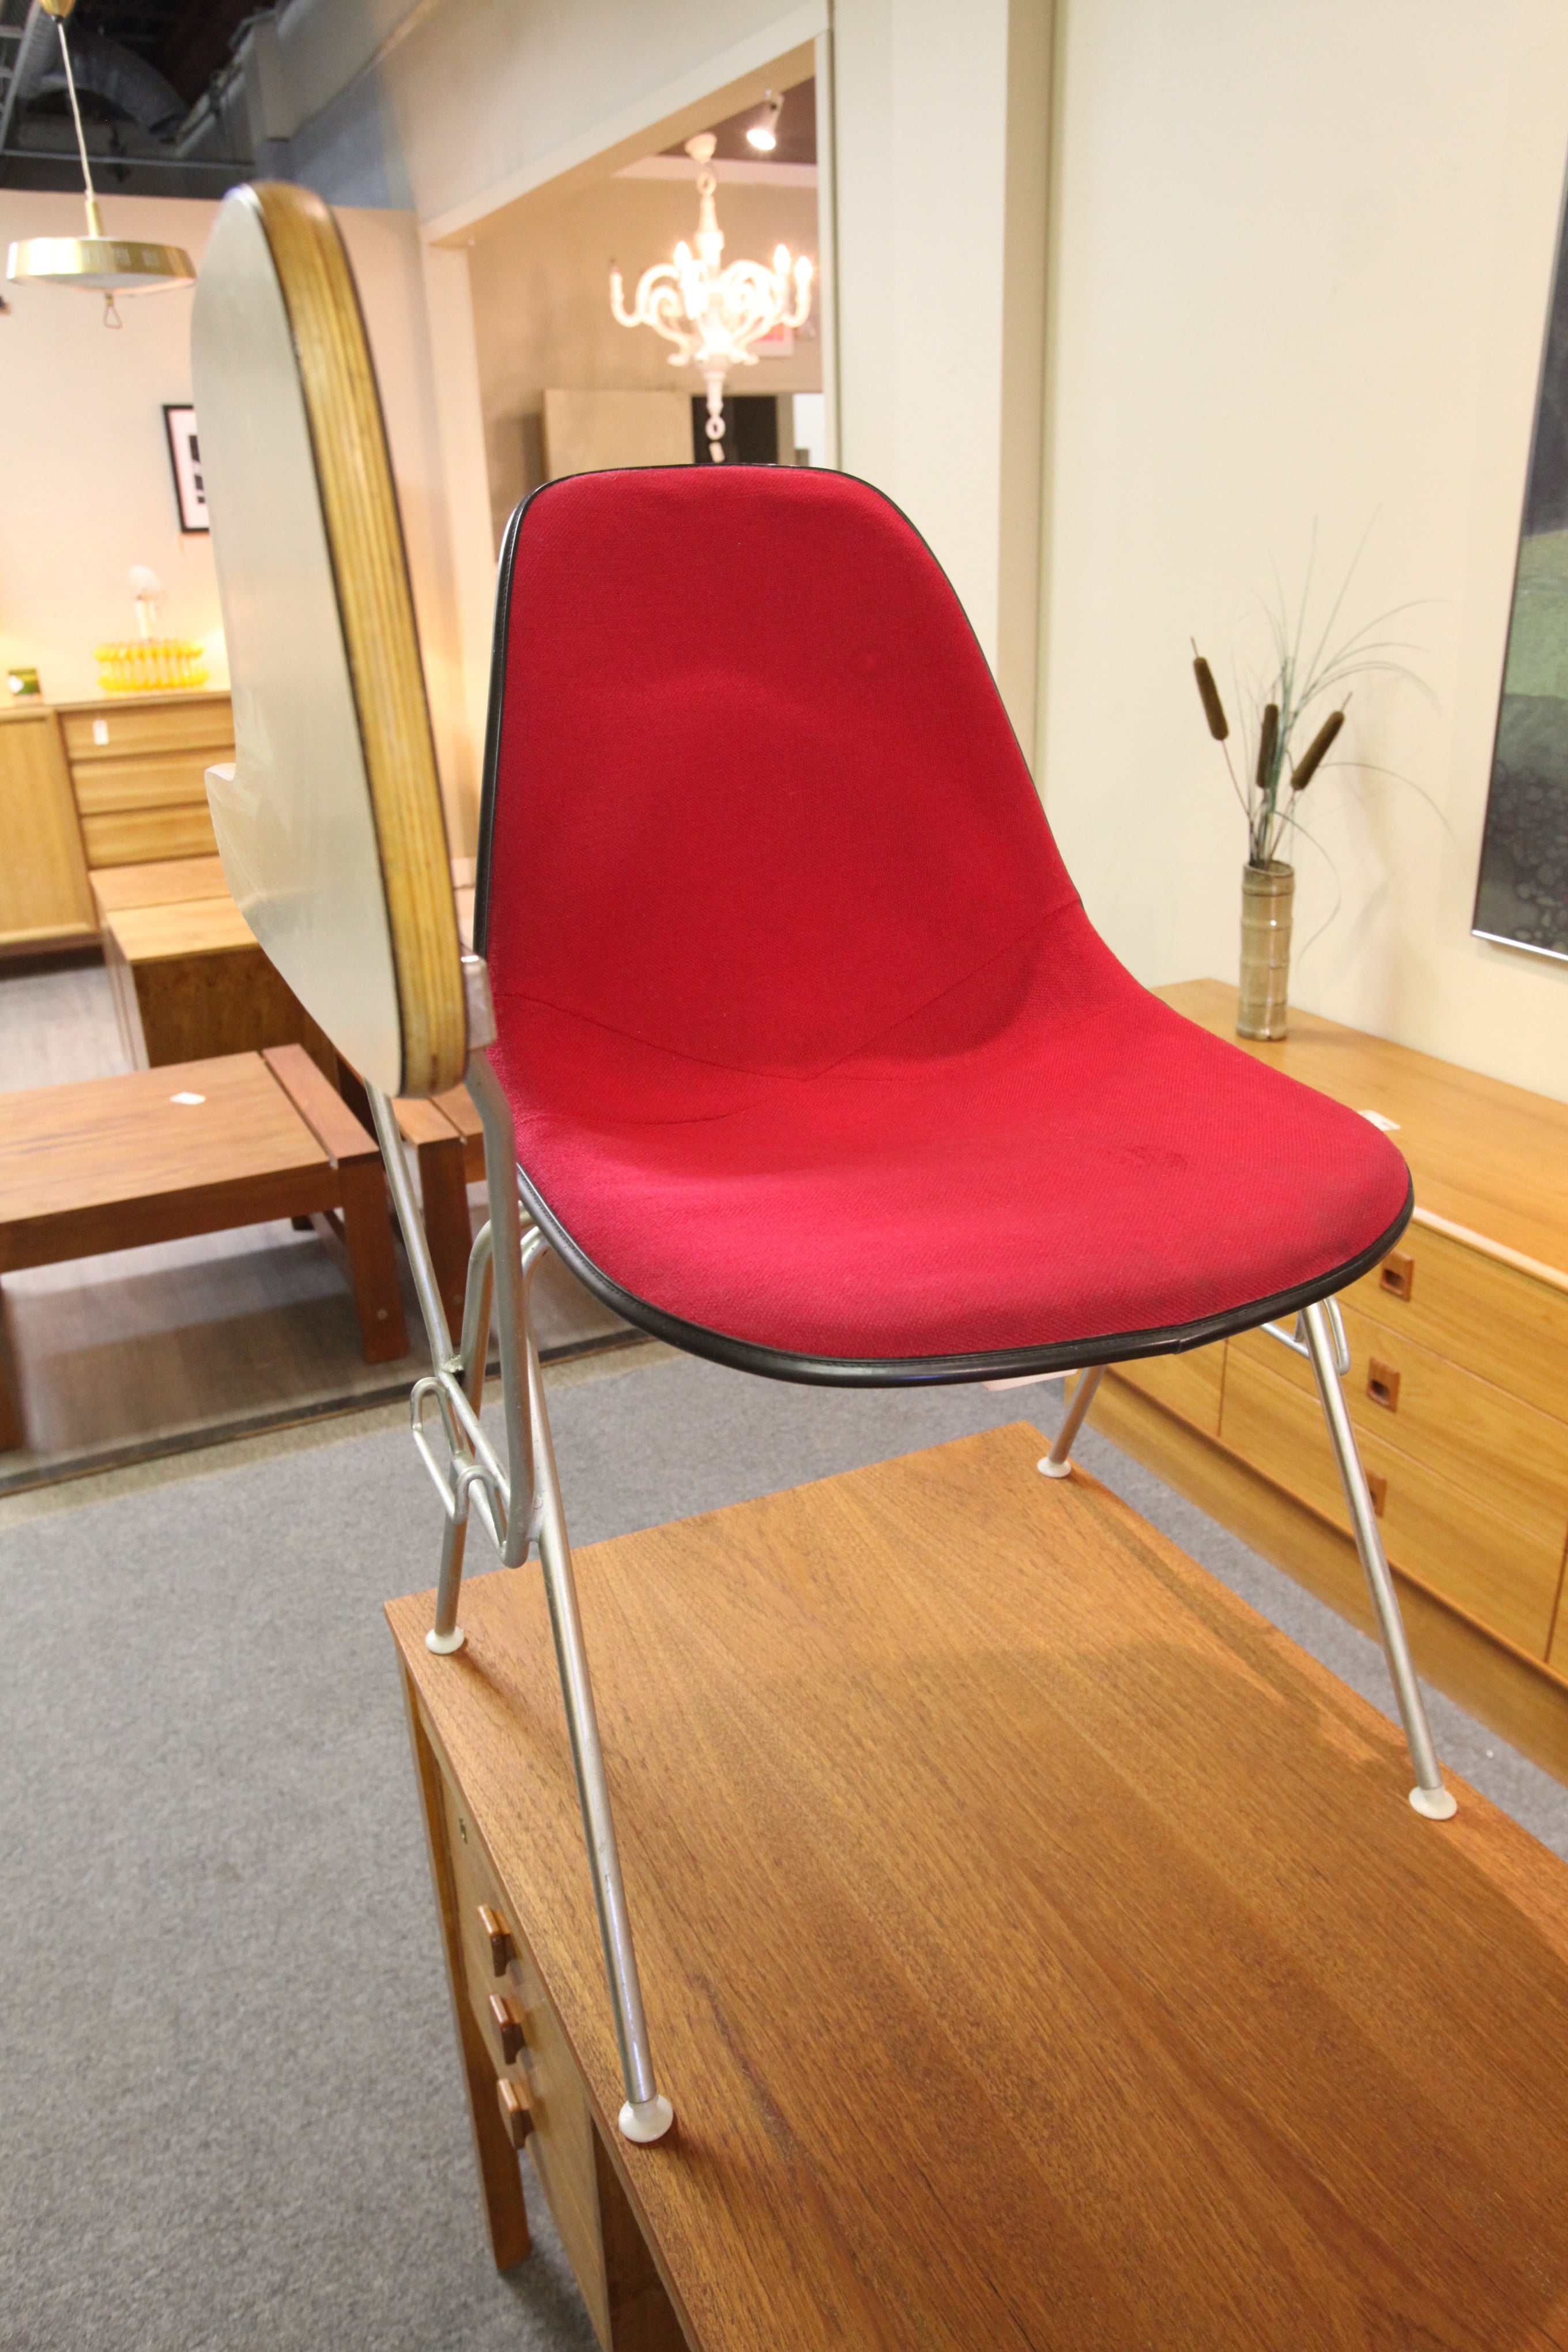 Herman Miller / Eames Desk Chair (Circa 1961)